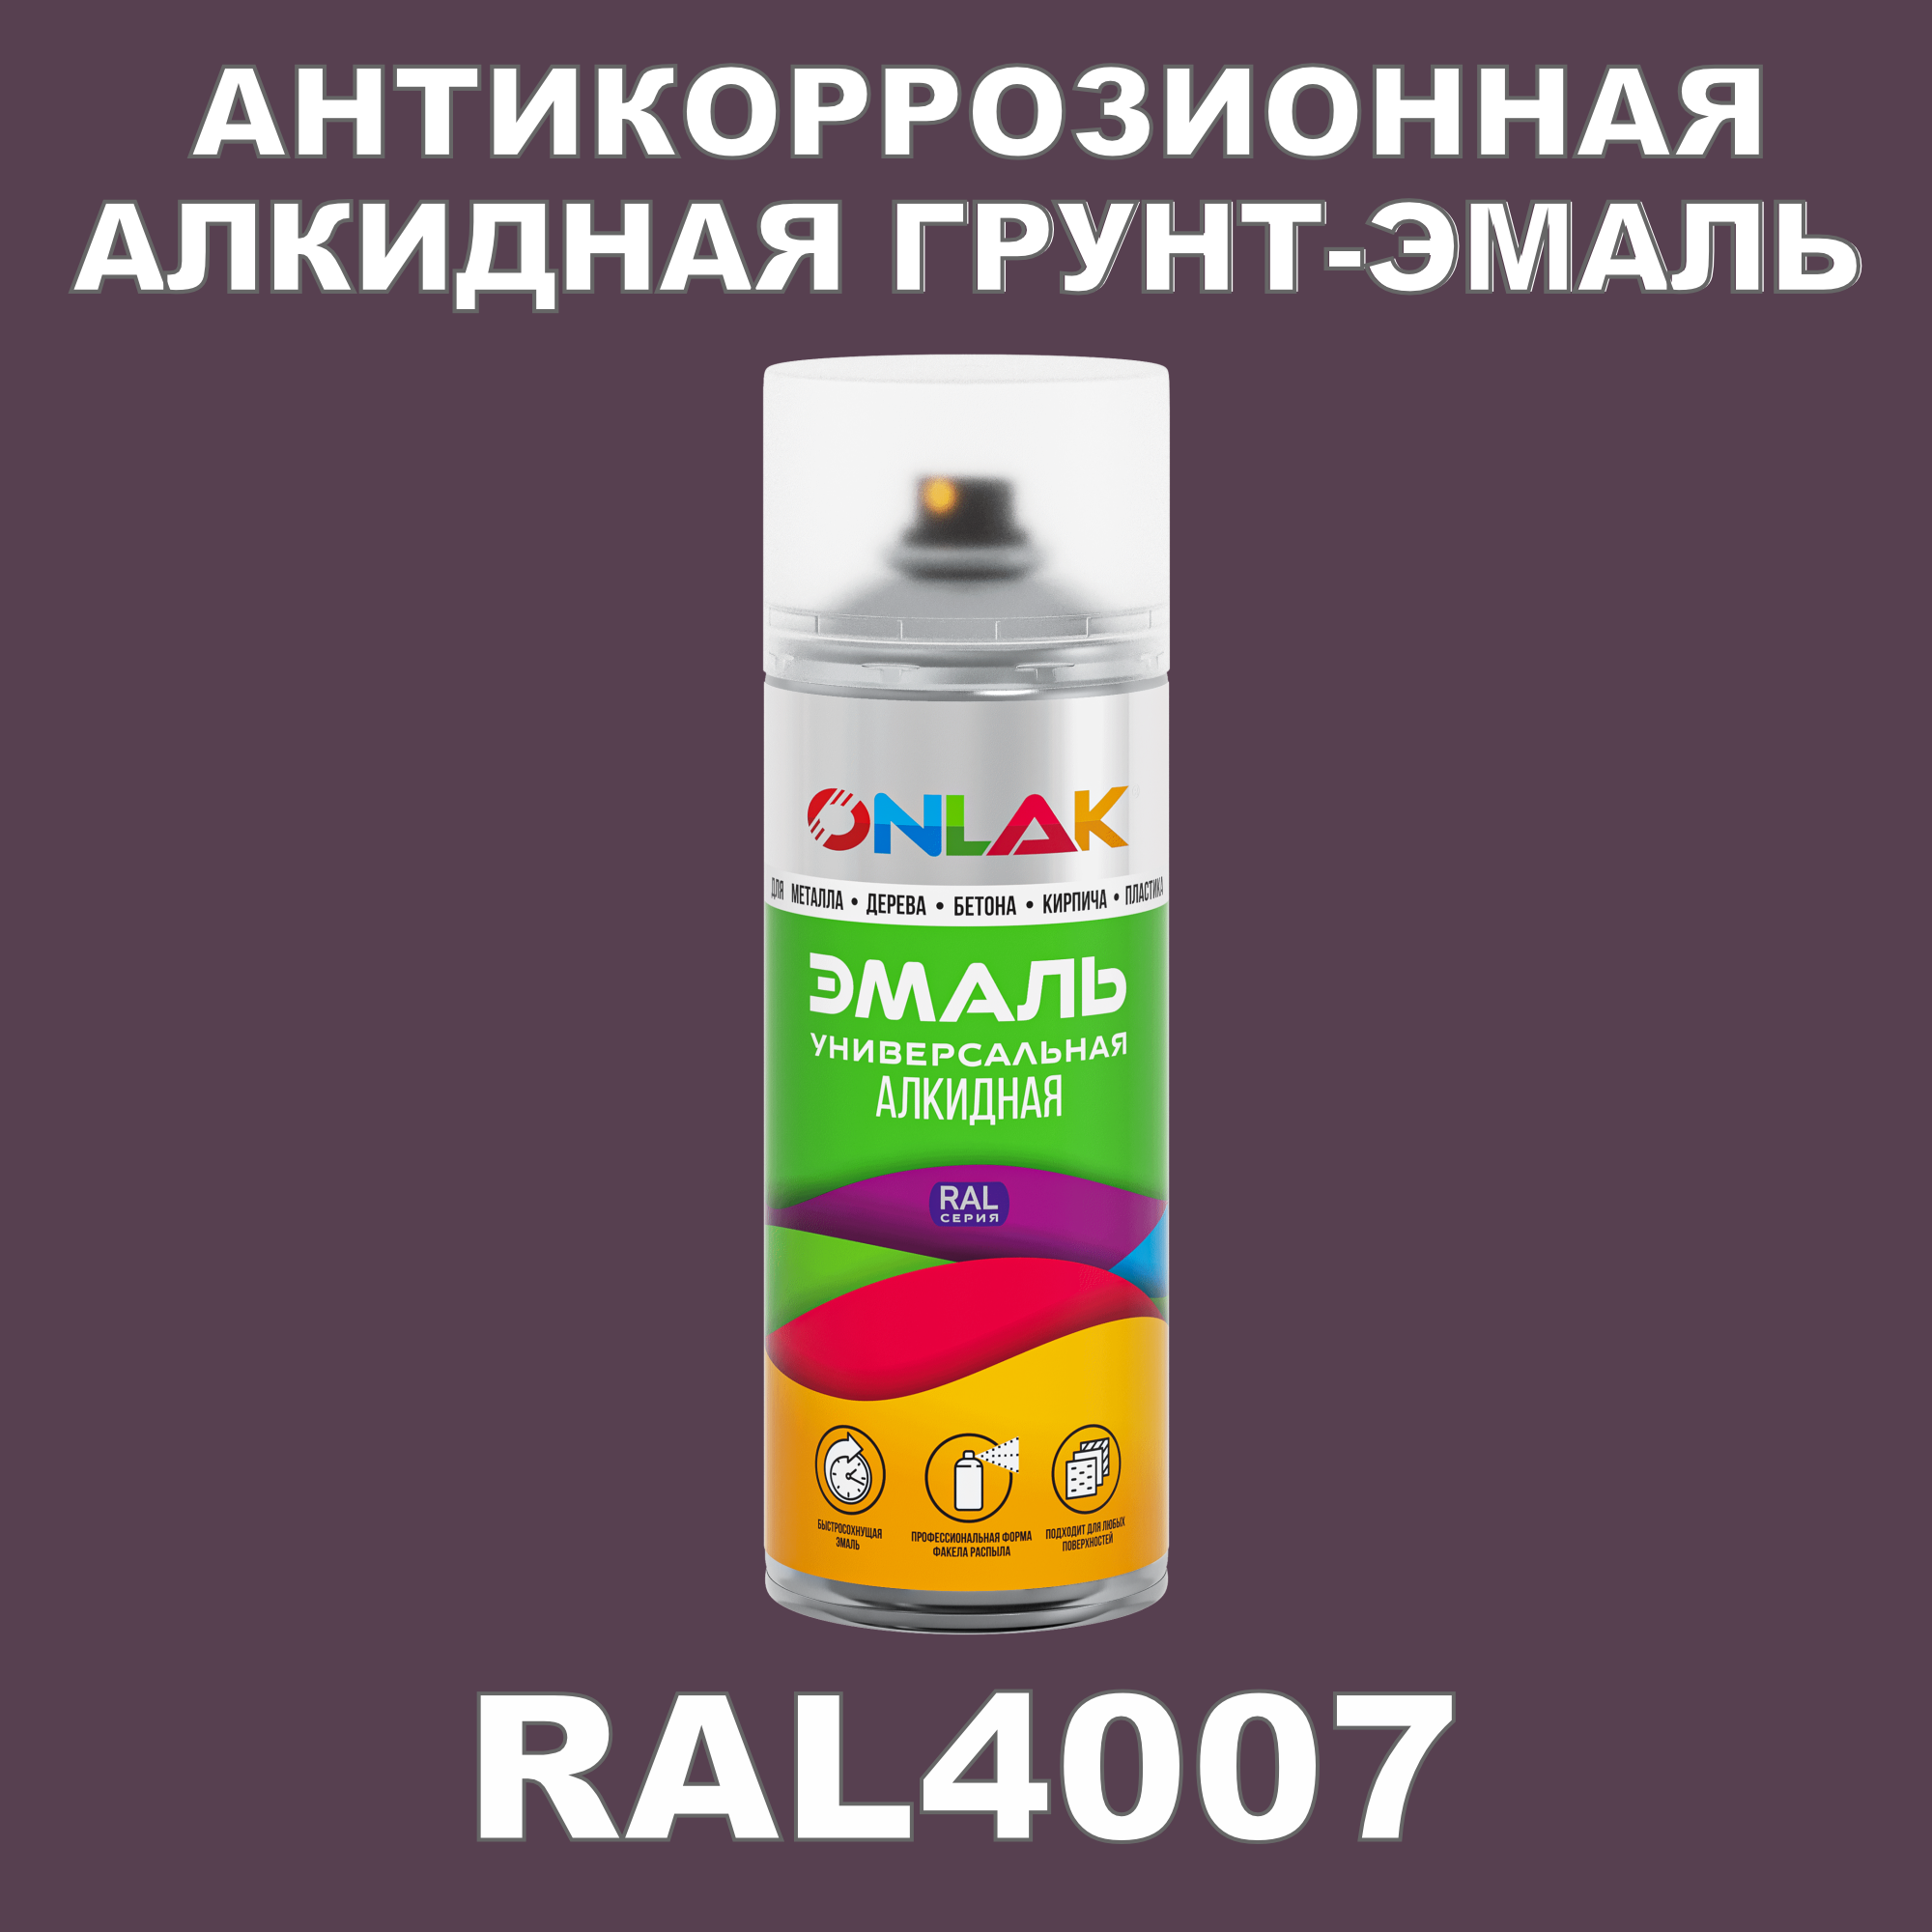 Антикоррозионная грунт-эмаль ONLAK RAL 4007,фиолетовый,572 мл рюкзак на молнии 2 наружных кармана розовый фиолетовый